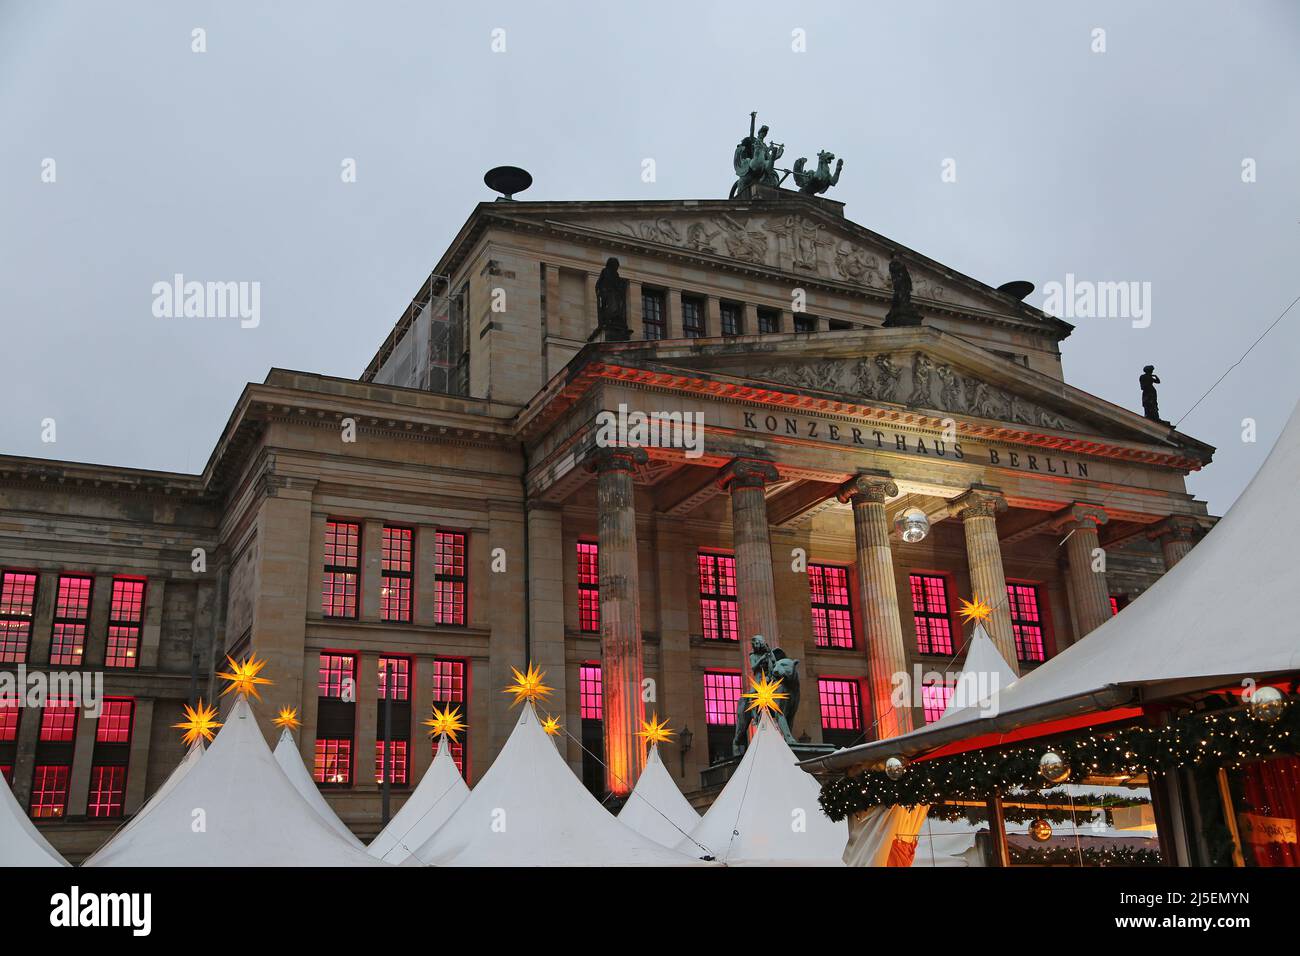 Konzerthaus y estrellas del mercado de Navidad - Berlín, Alemania Foto de stock